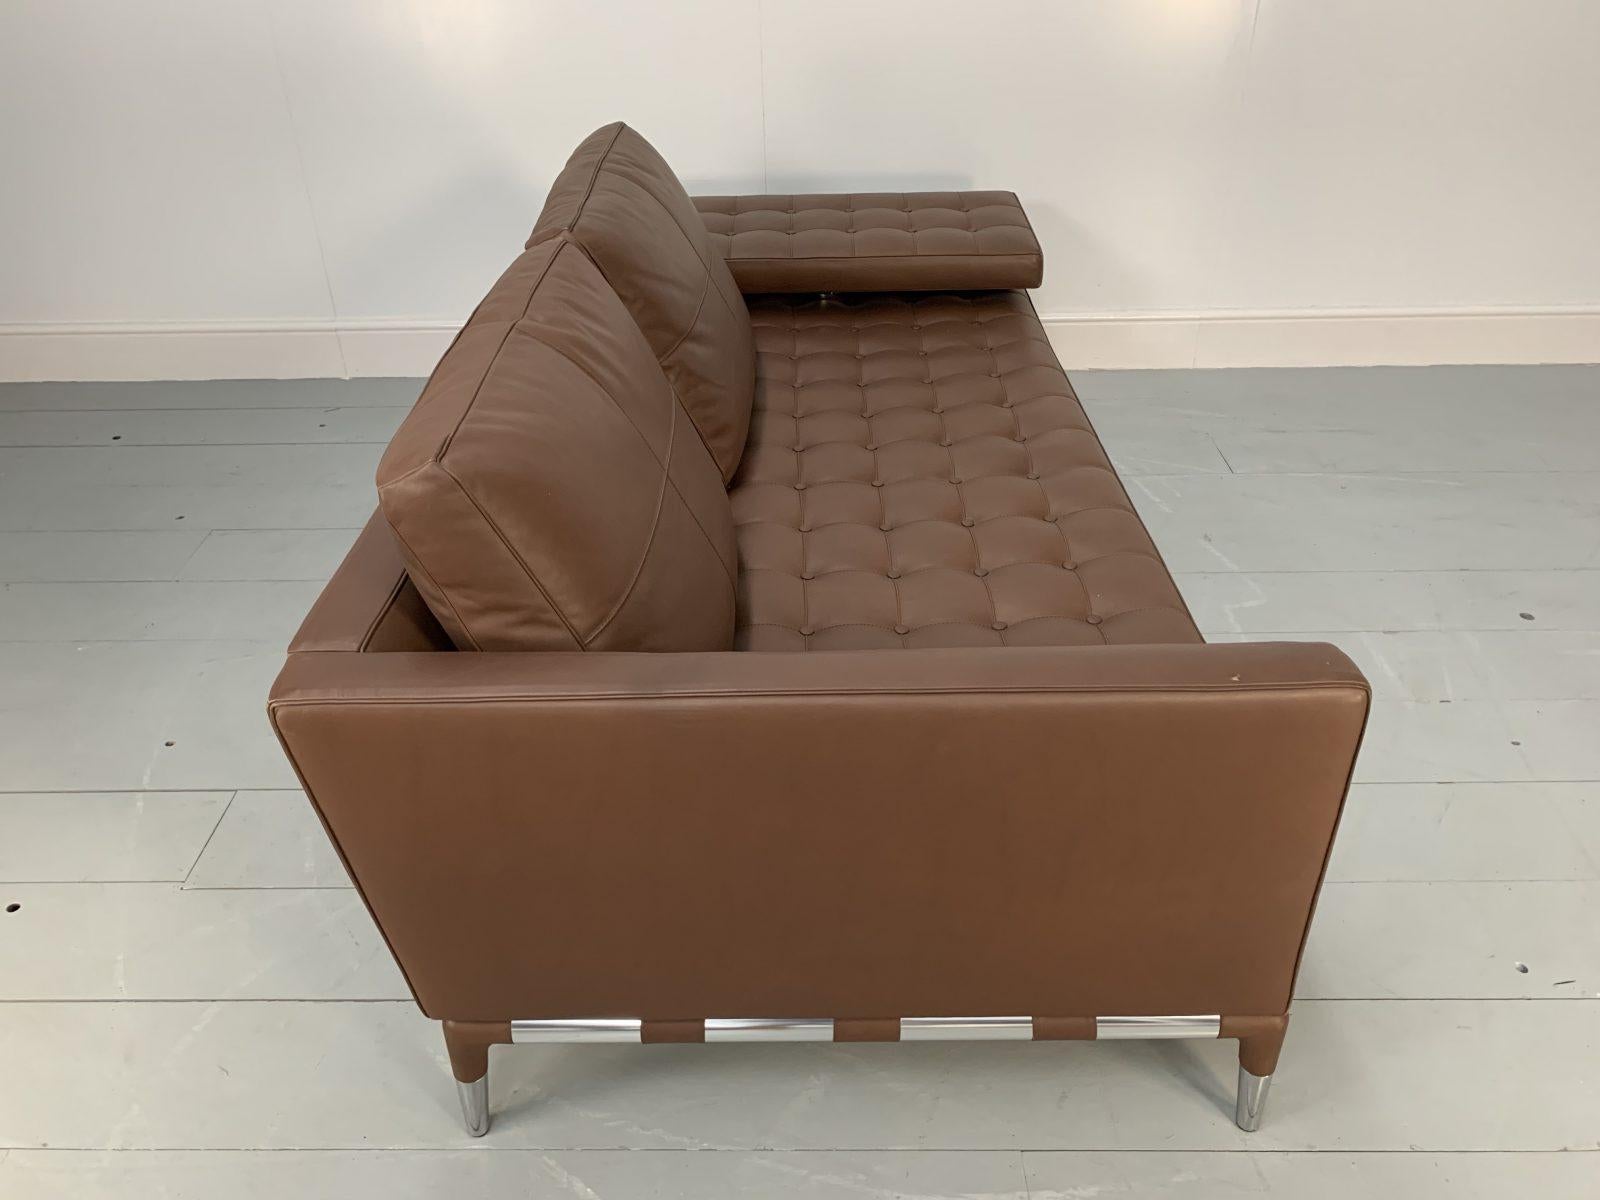 Cassina “241 Prive Divano” Sofa – in Mid-Brown “Pelle” Leather 3